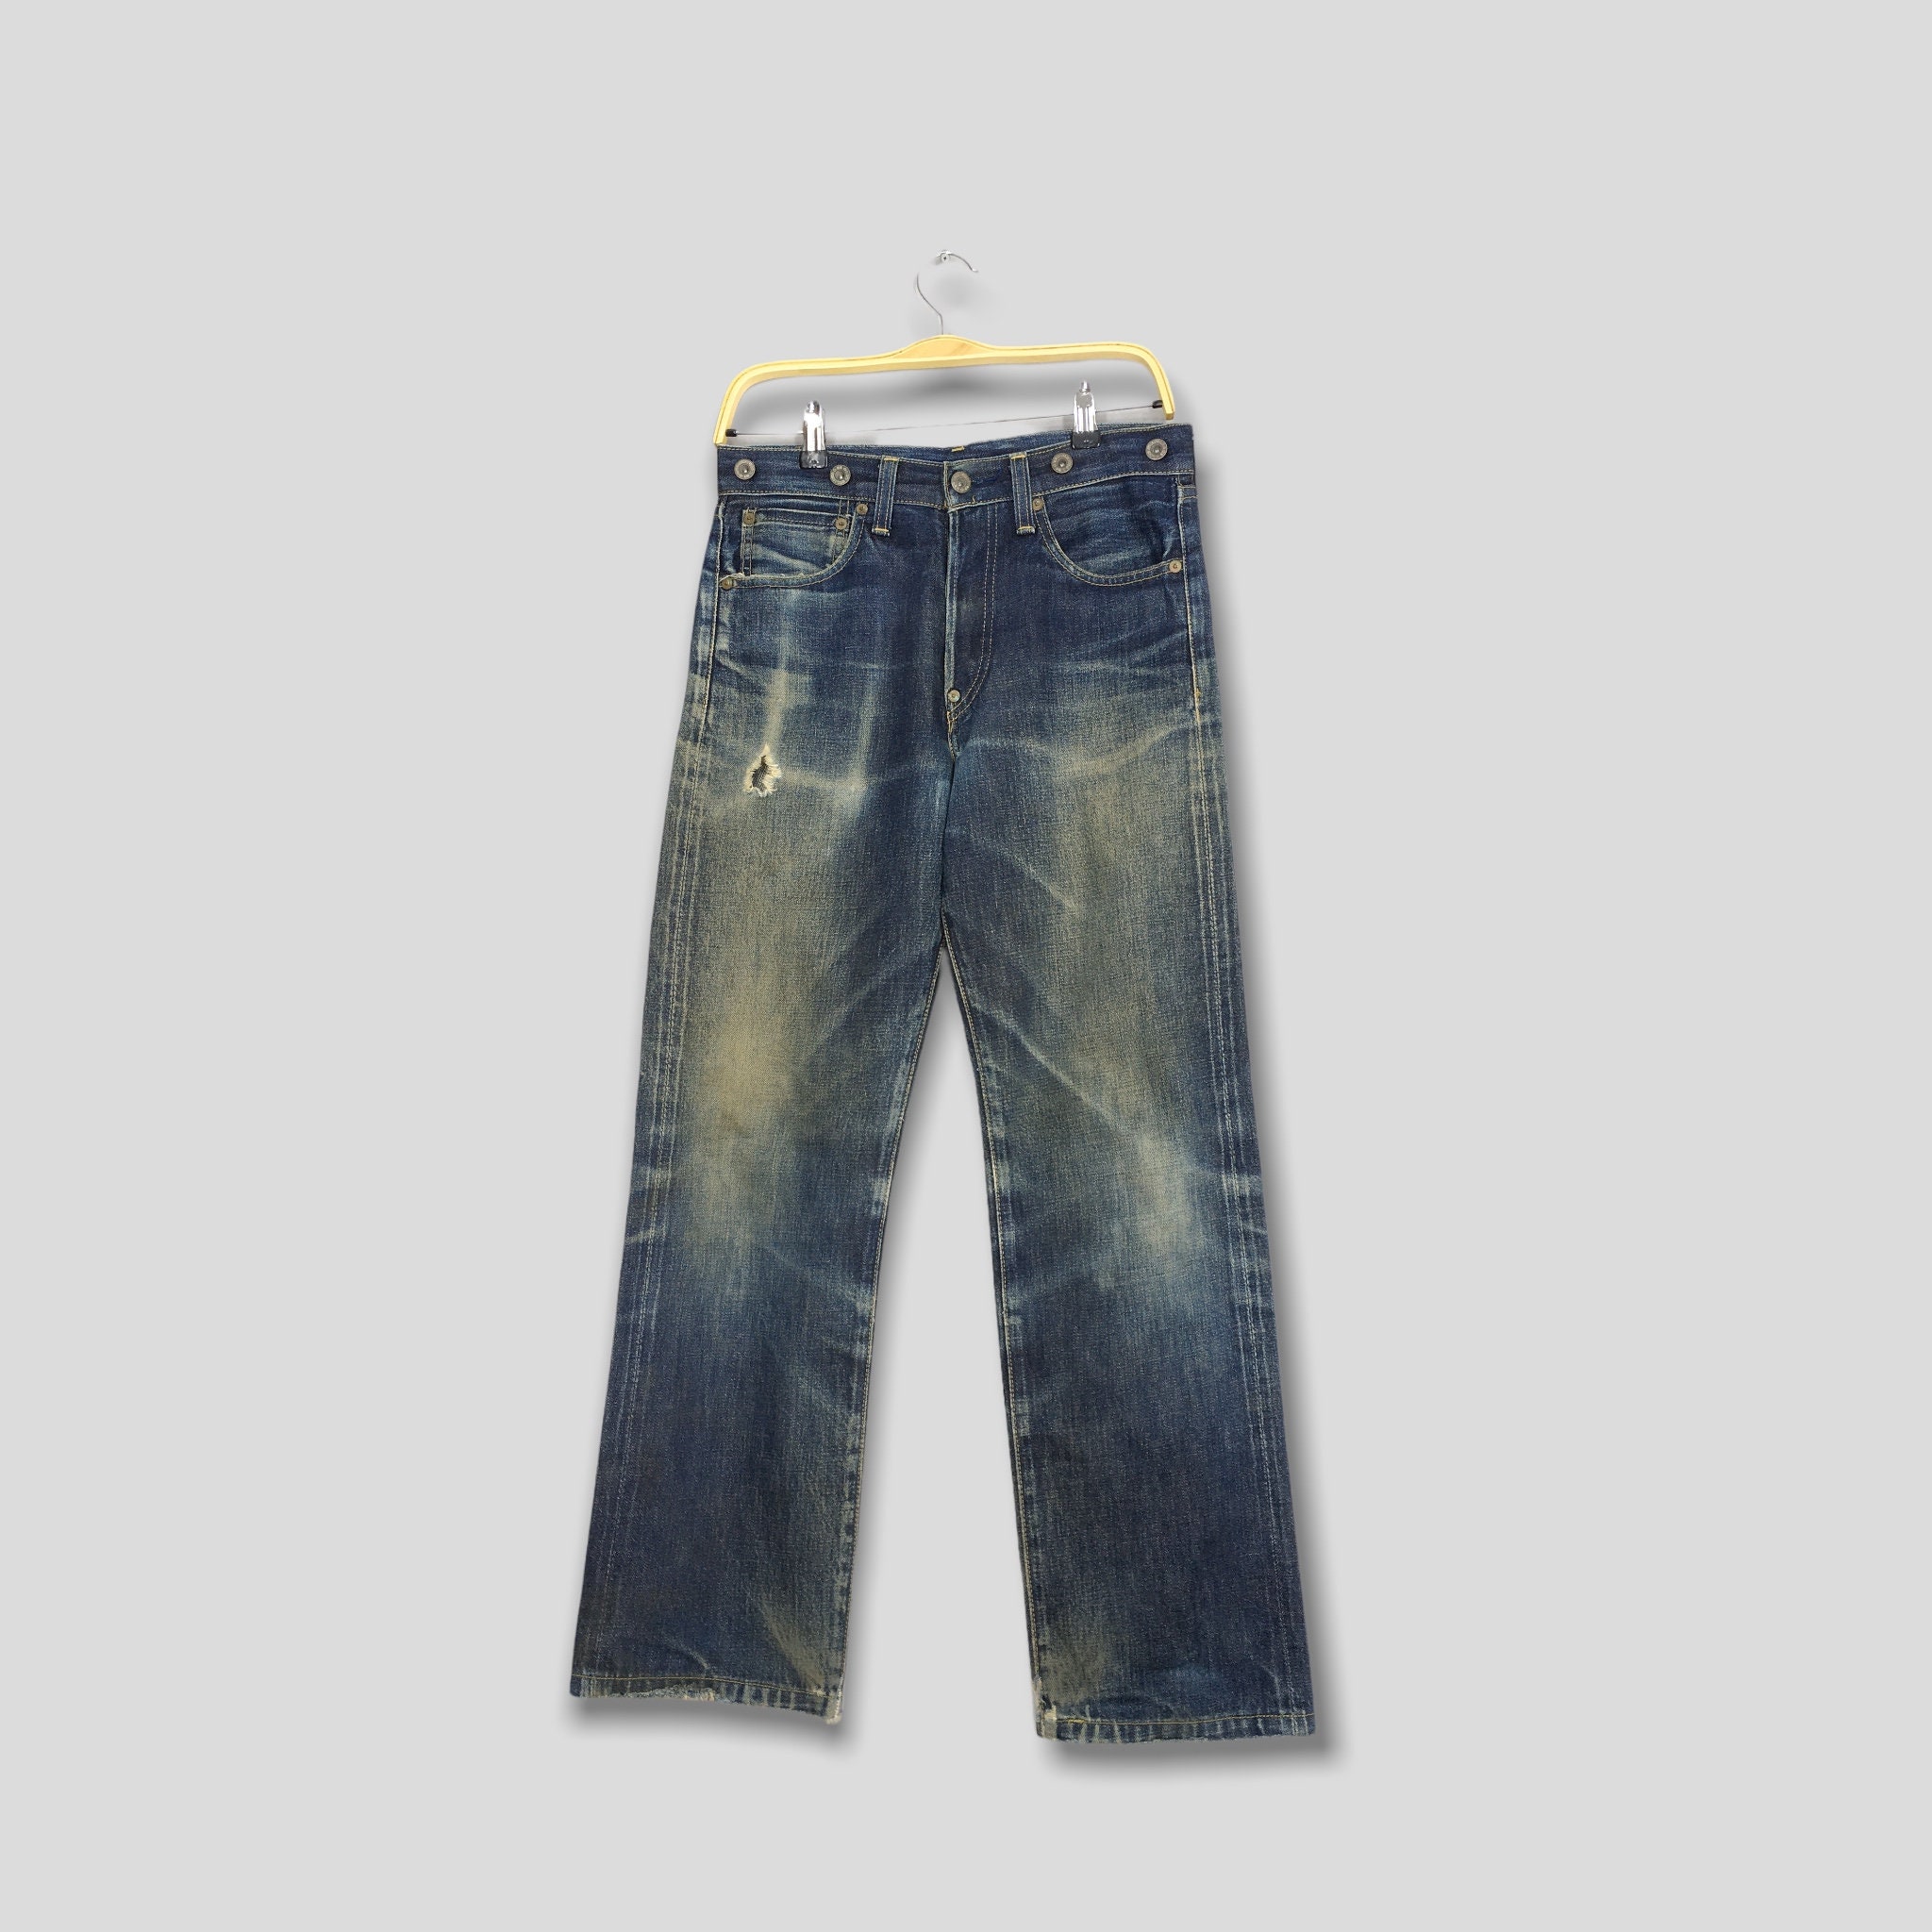 LVC Levi’s Vintage Clothing 501XX 1890 Cinch Back Selvedge Denim Jeans 32X34